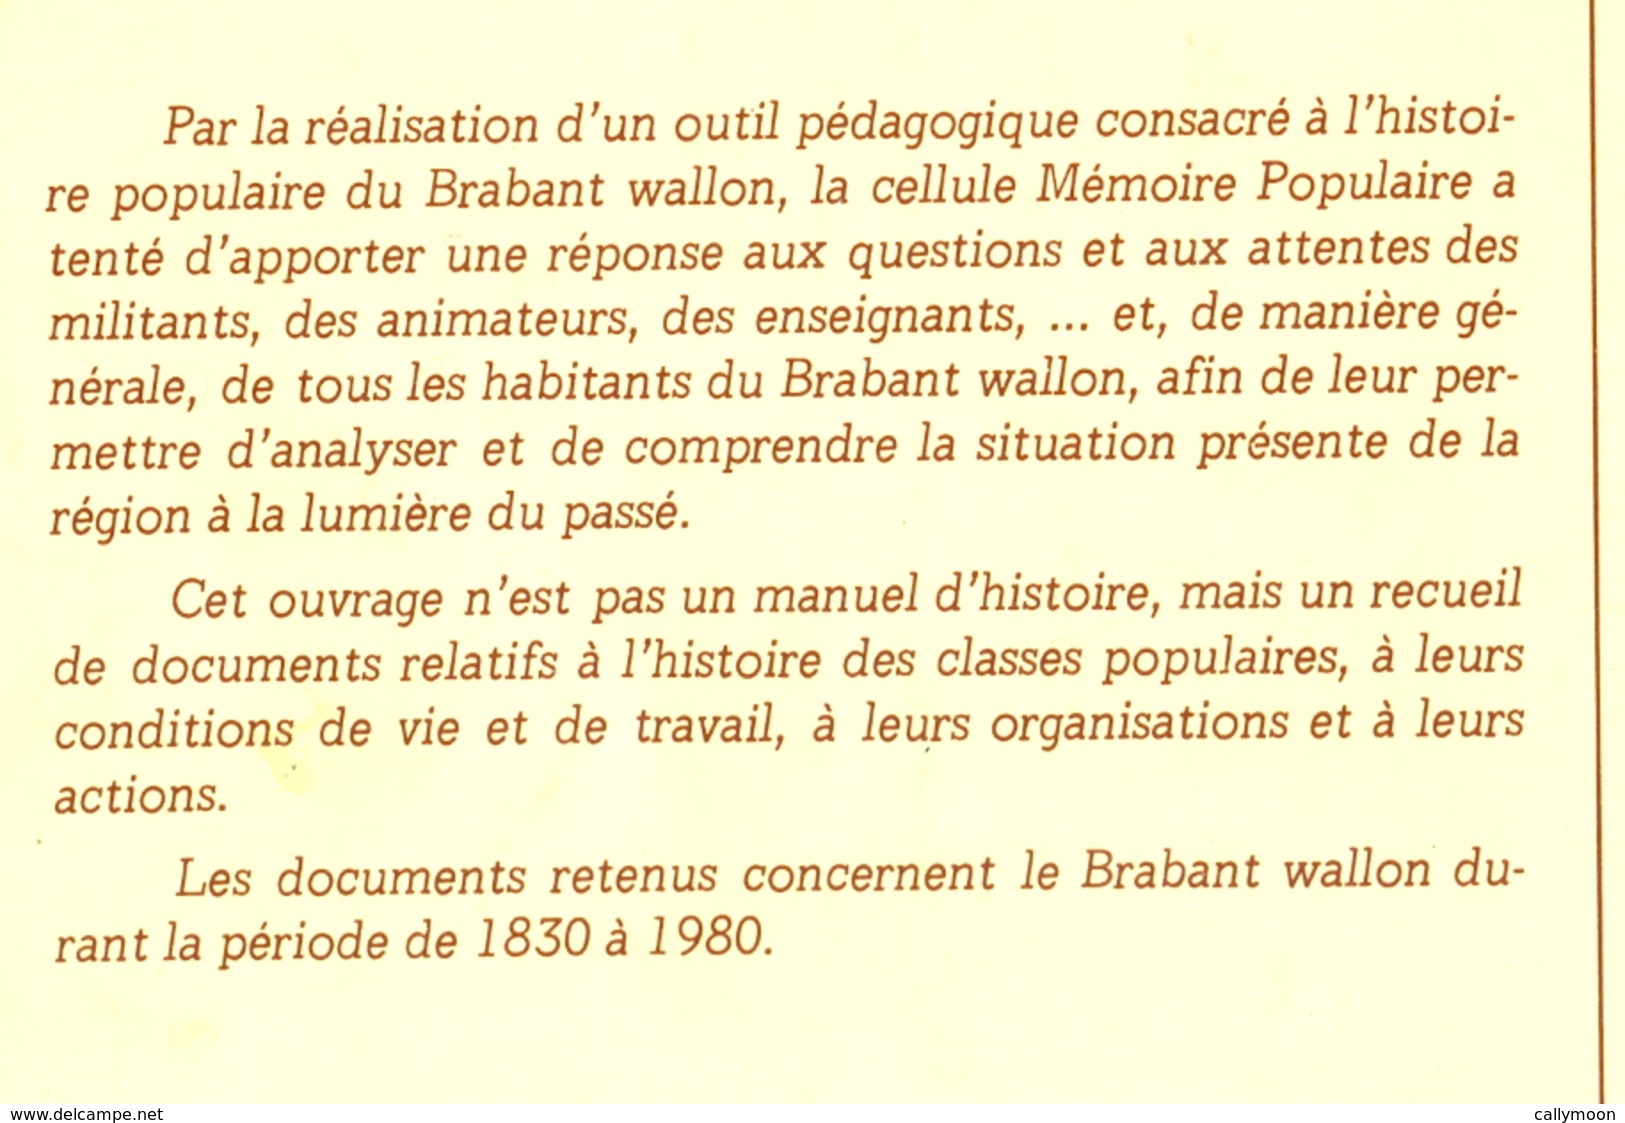 Volumes 1 Et 2 - Réalités Populaires En Brabant Wallon (1830-1980) - Belgique